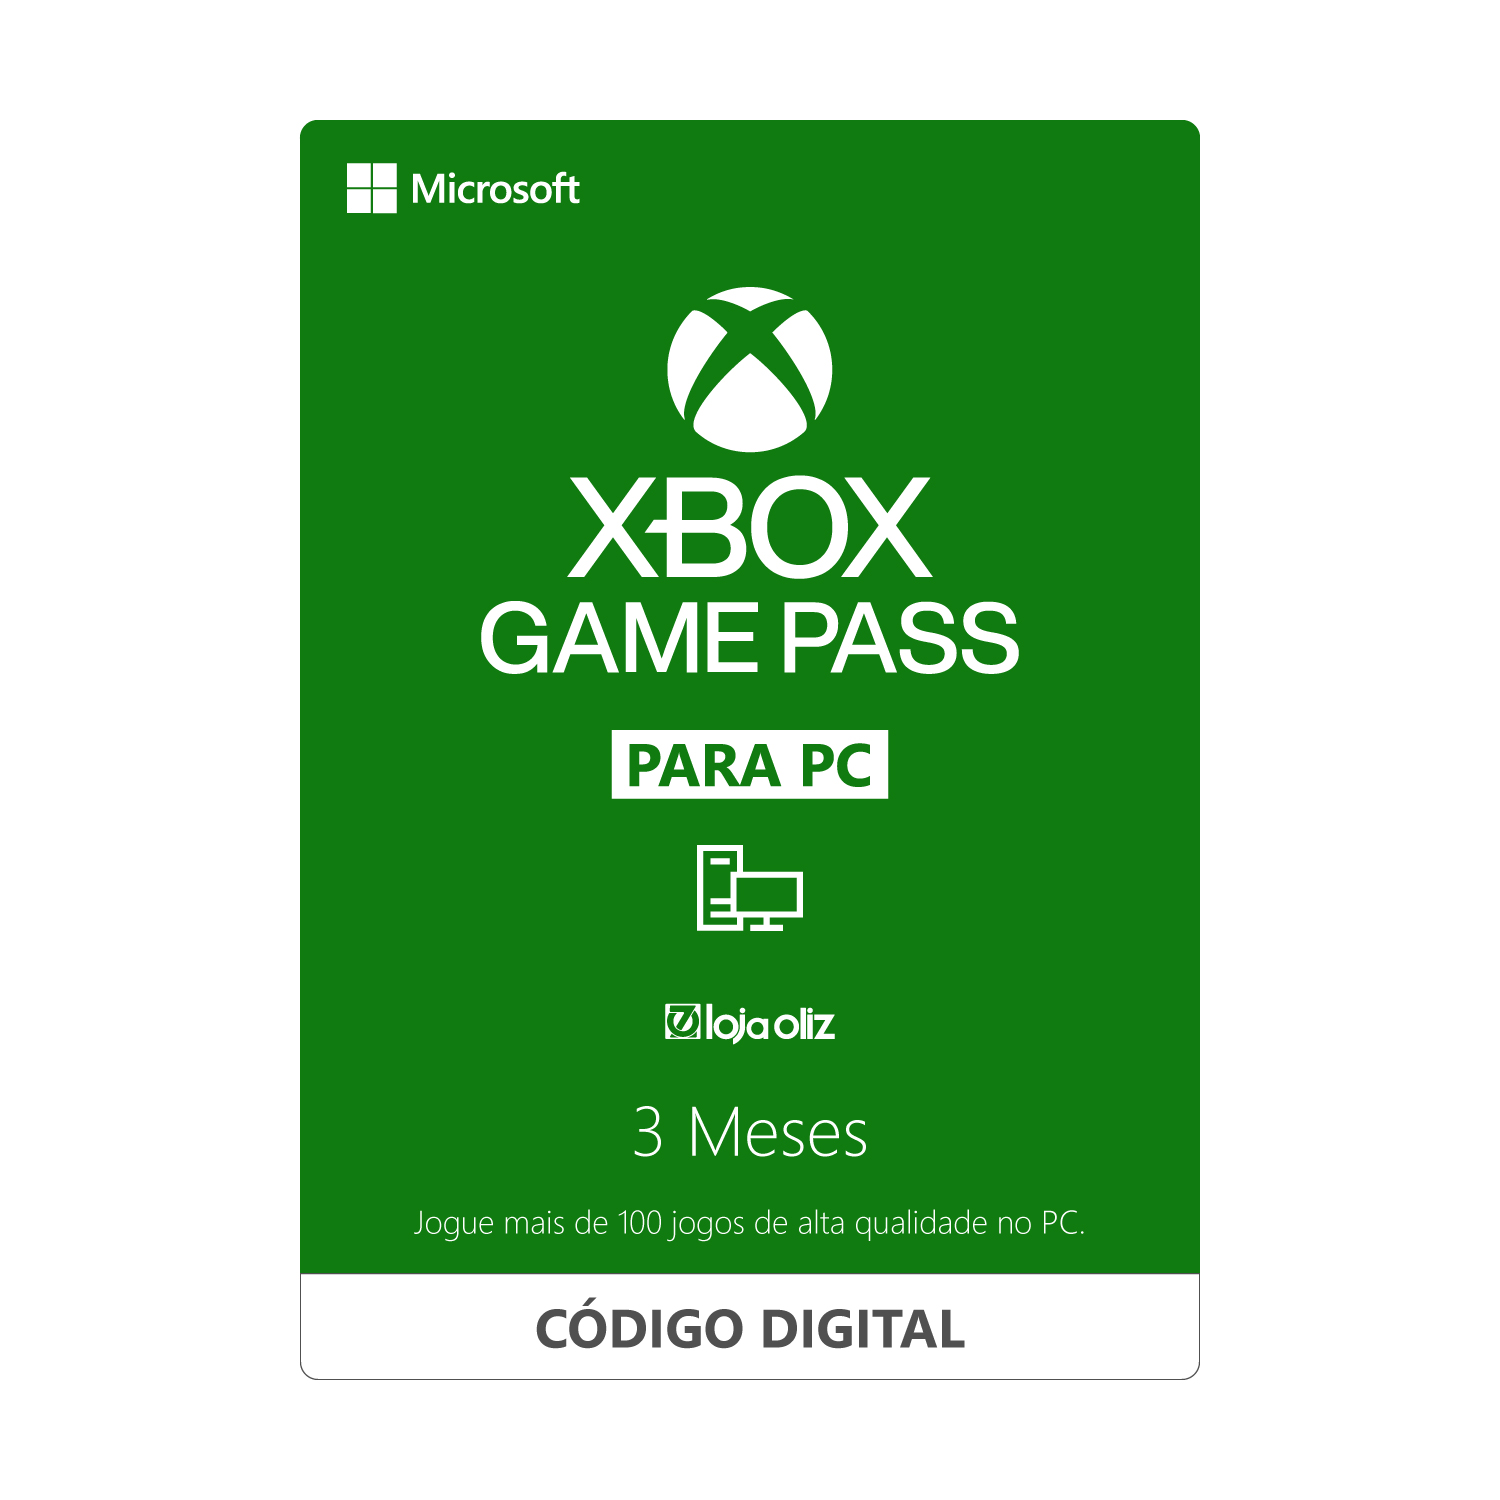 Gift Card Xbox Game Pass para PC 3 Meses - Código Digital - Loja Oliz